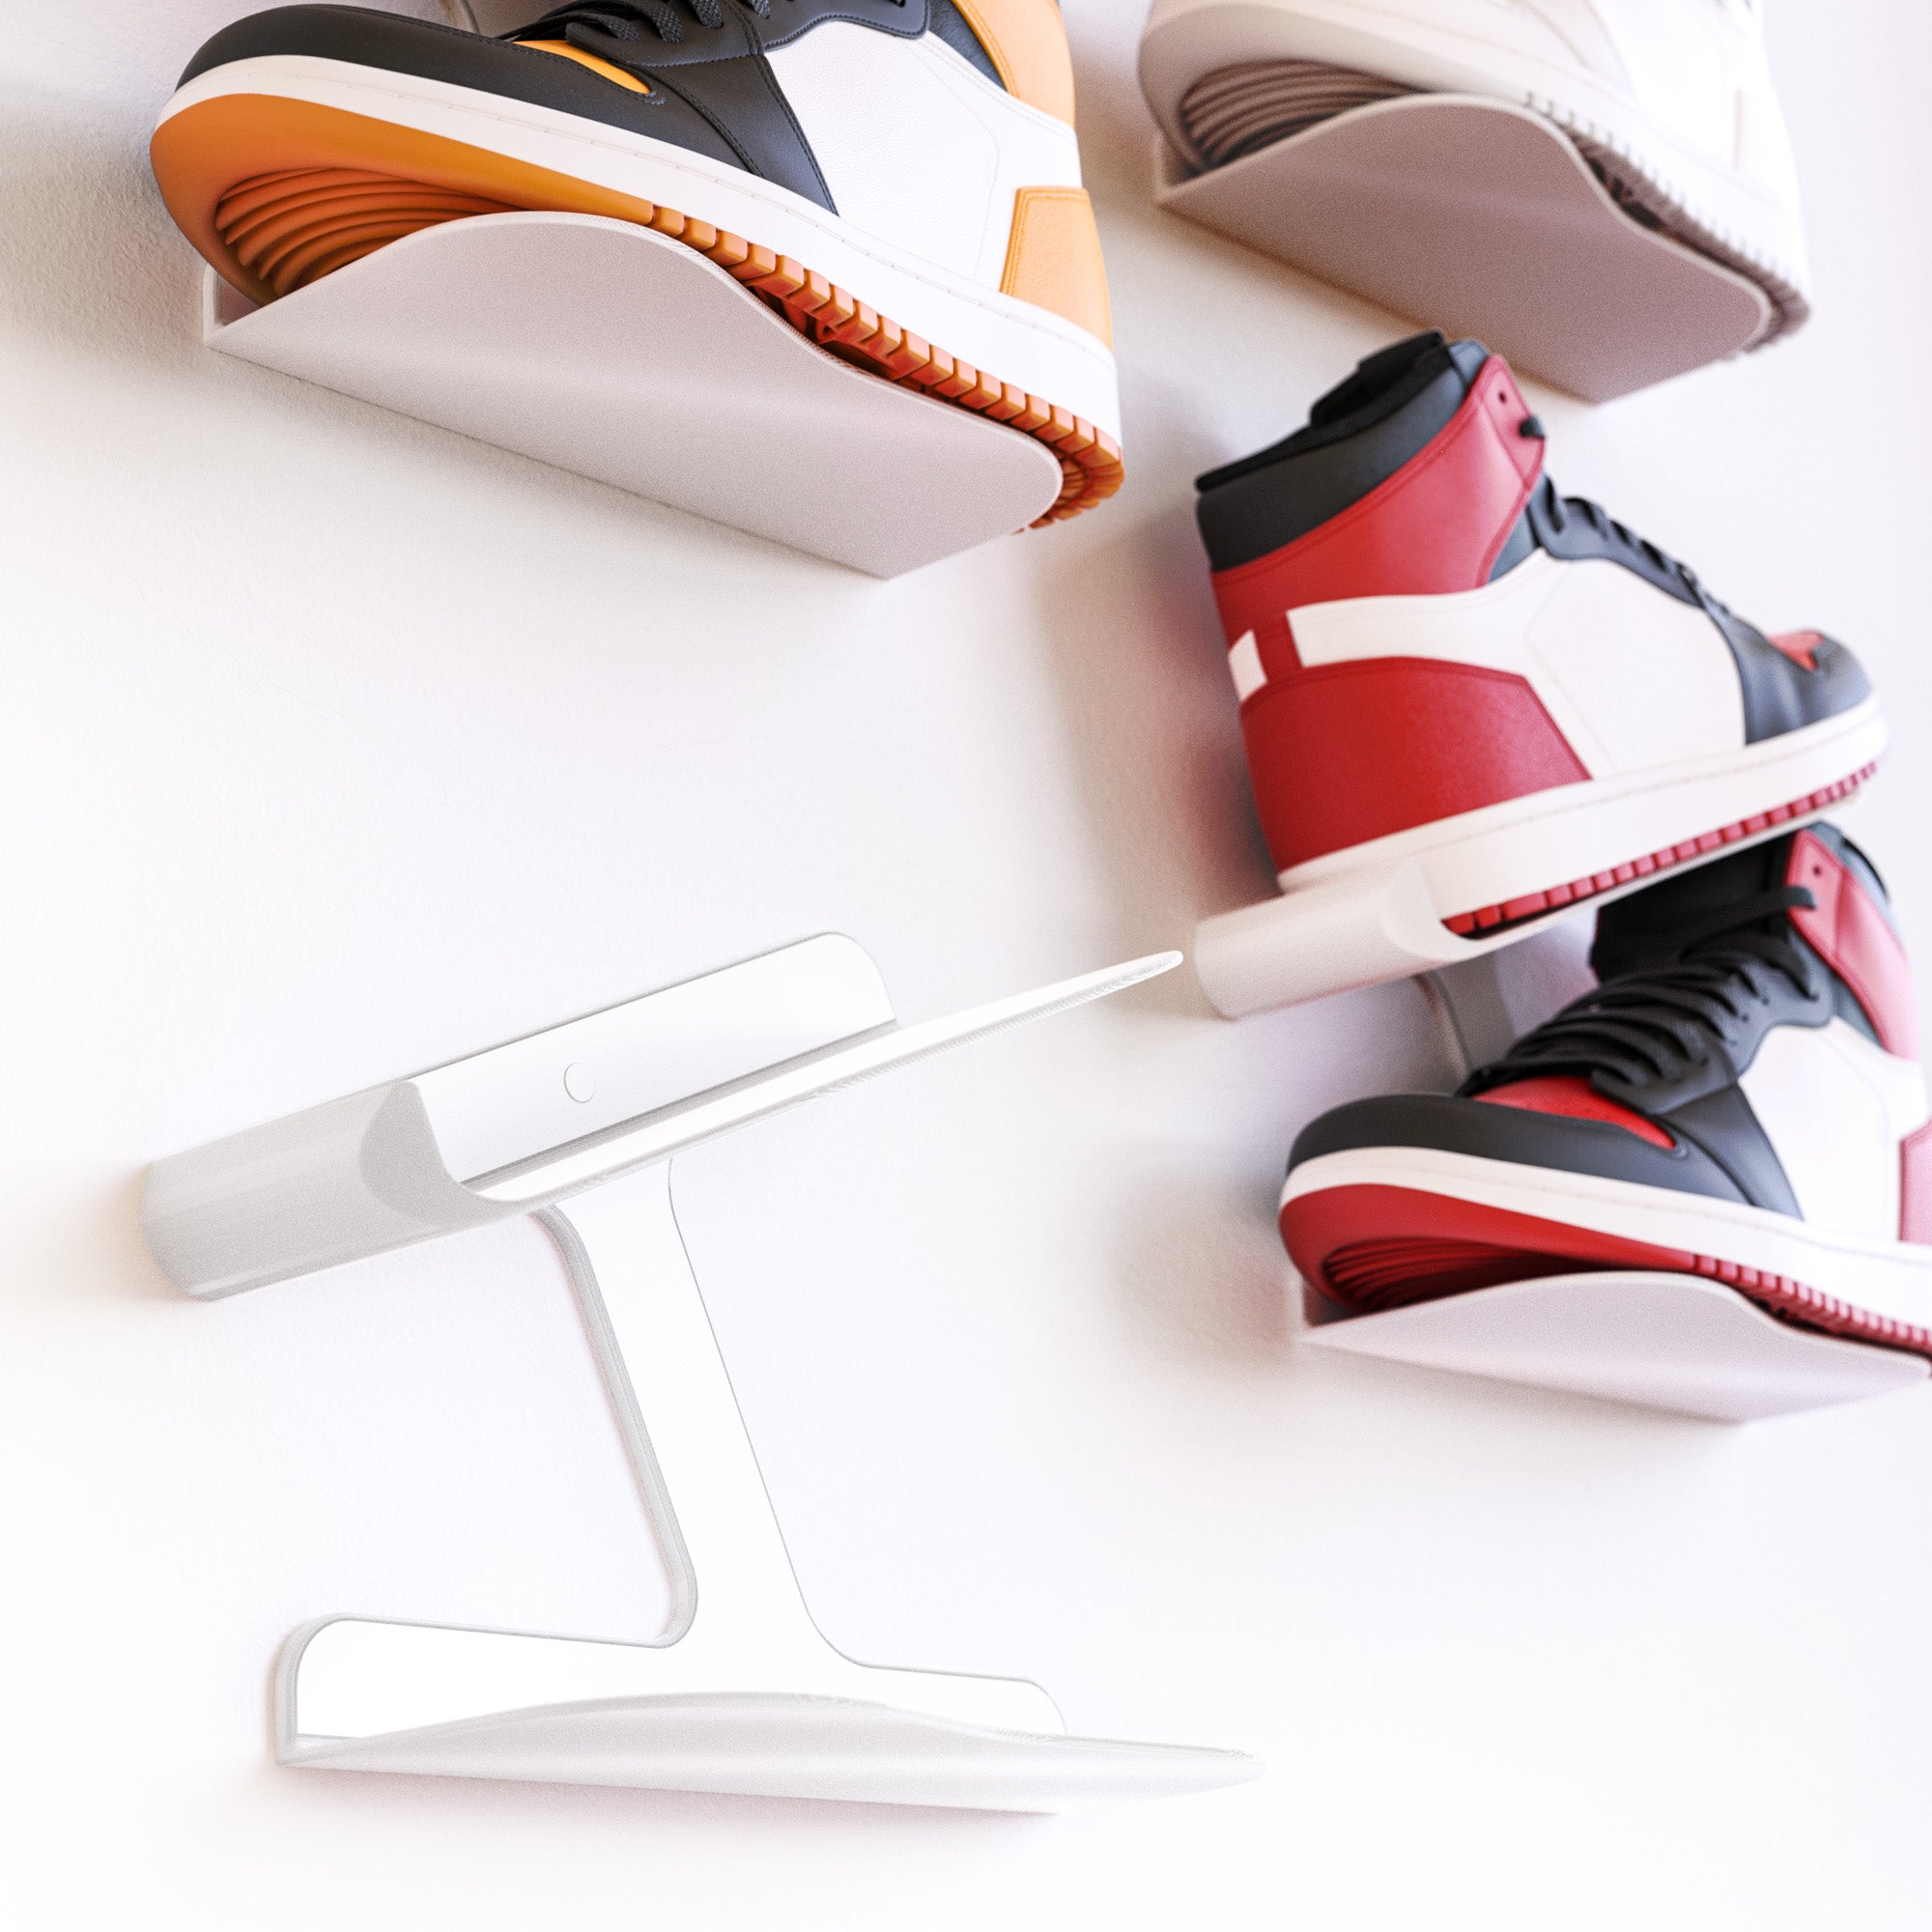 Sneaker Wandhalterung Schuh Regal Schwebend Wandhalter Schuhablage Display